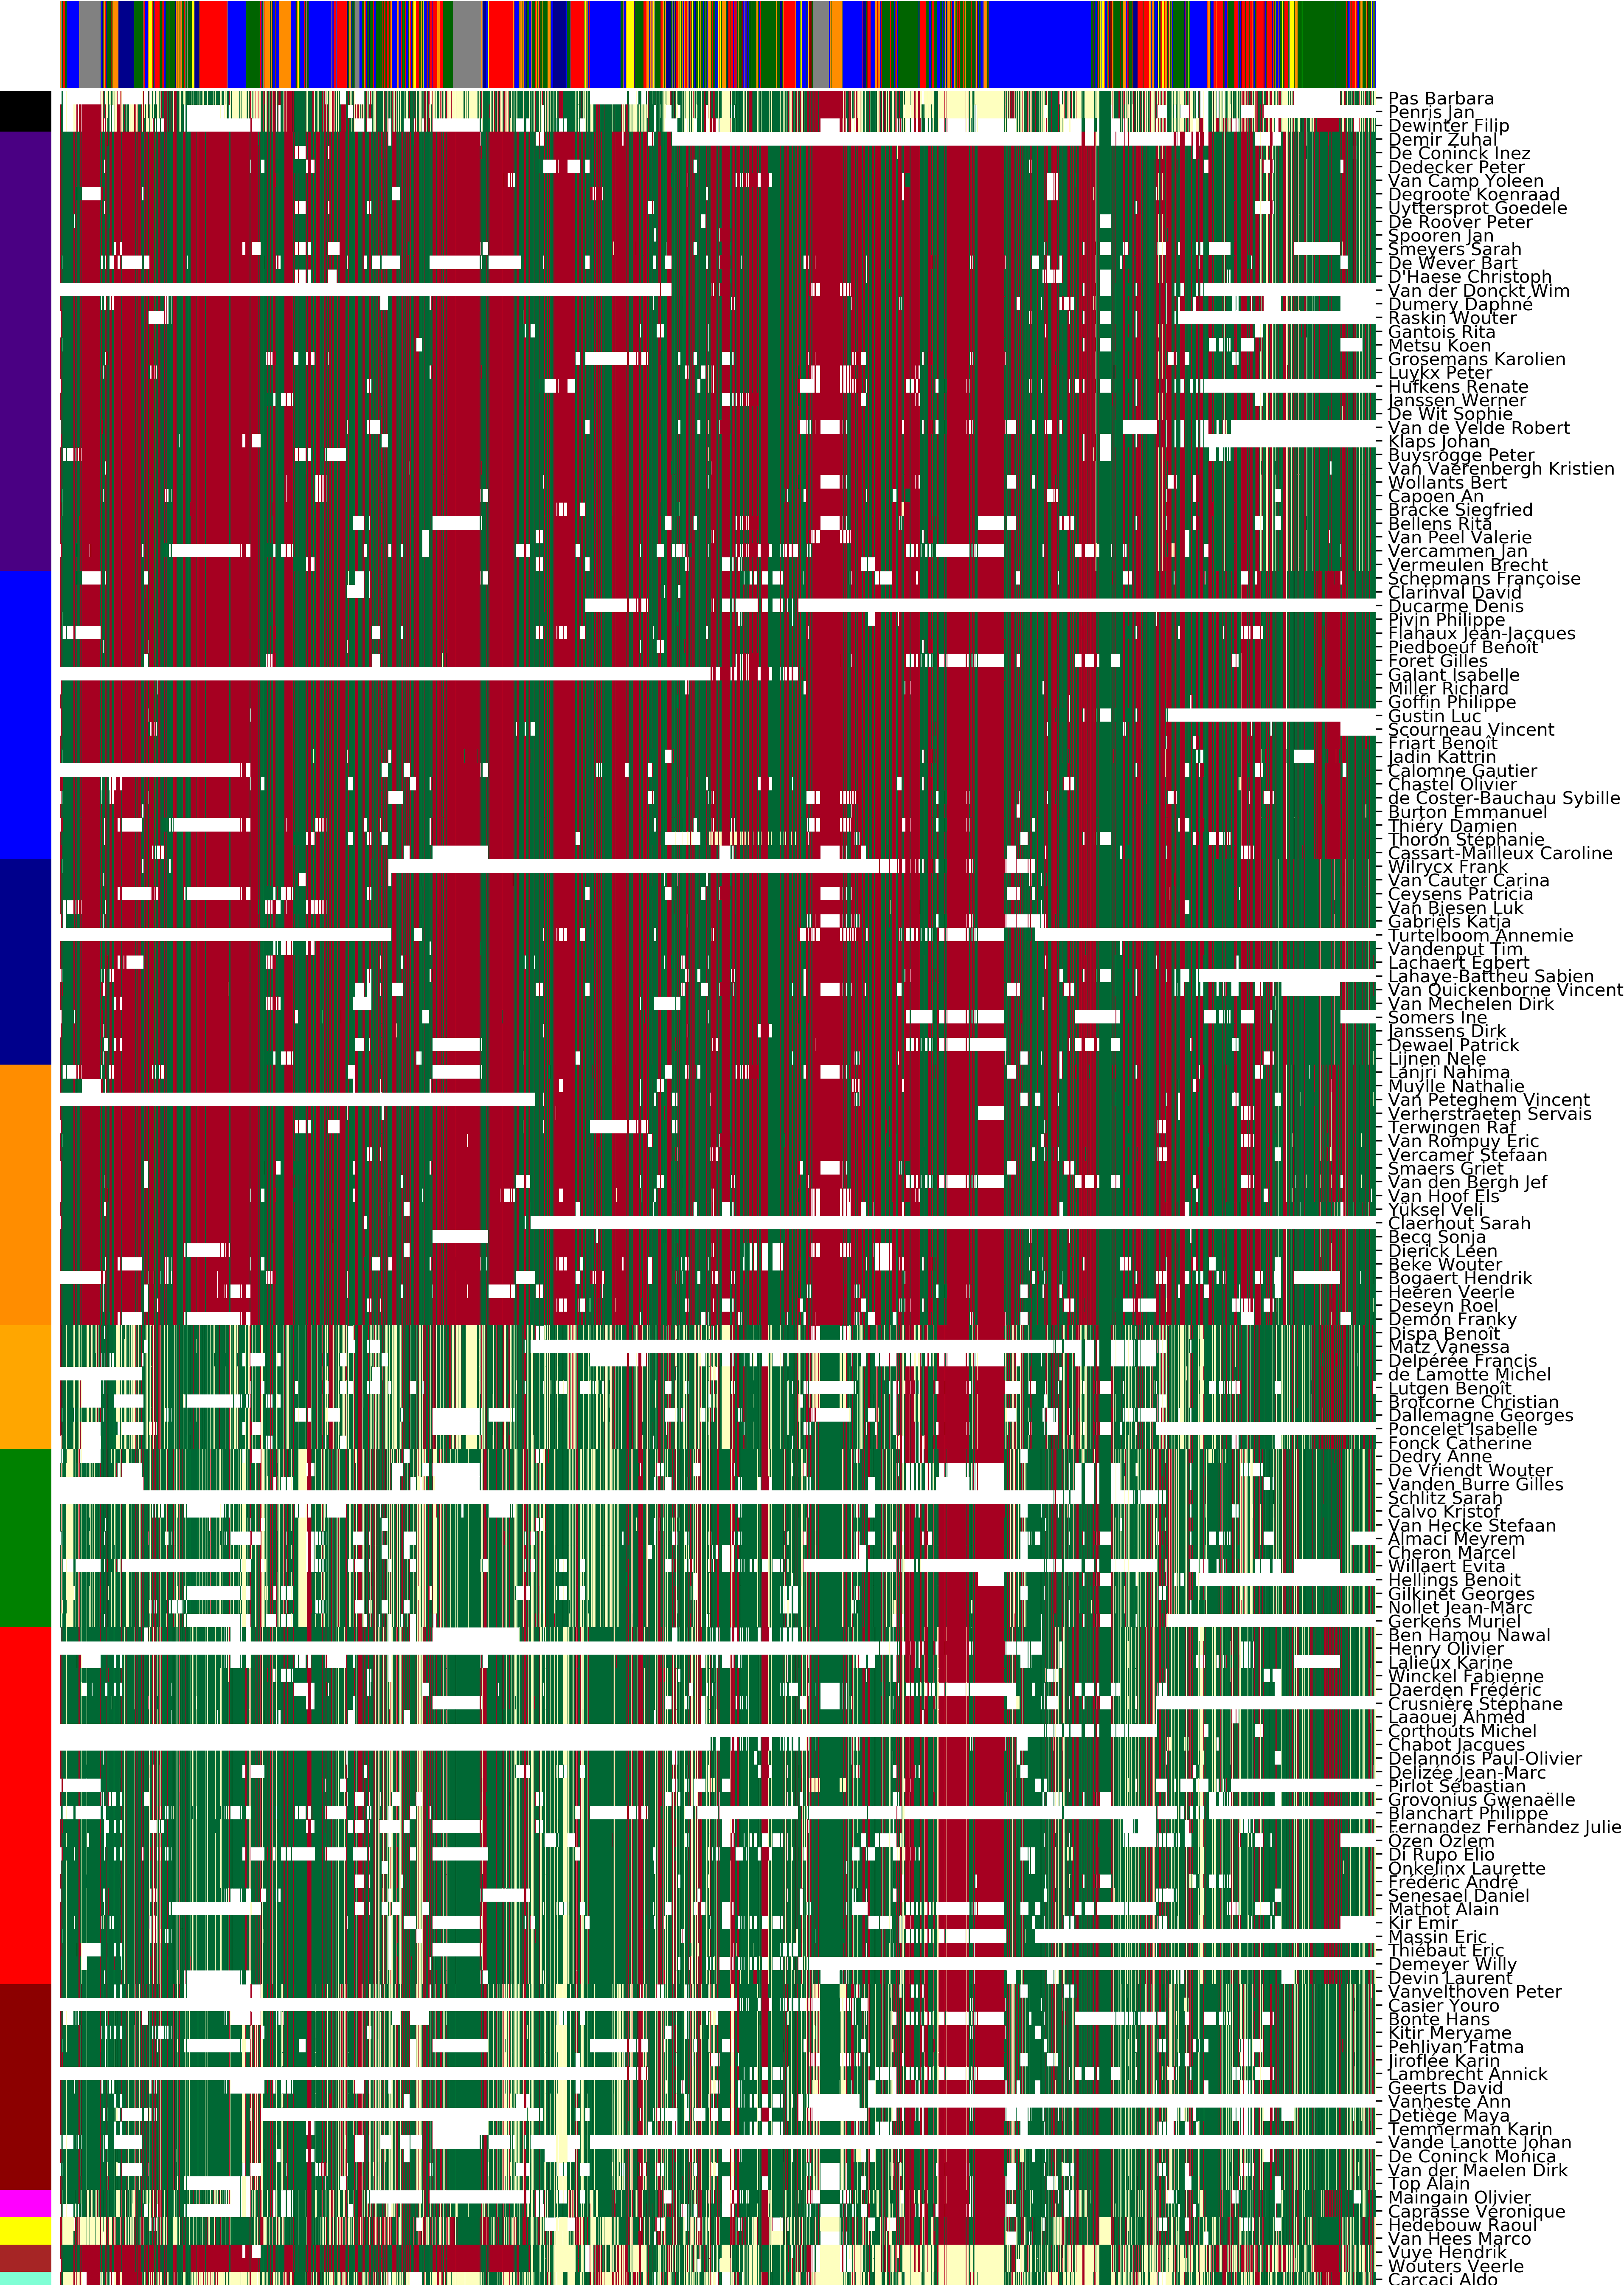 Tableau des votes des députés belges